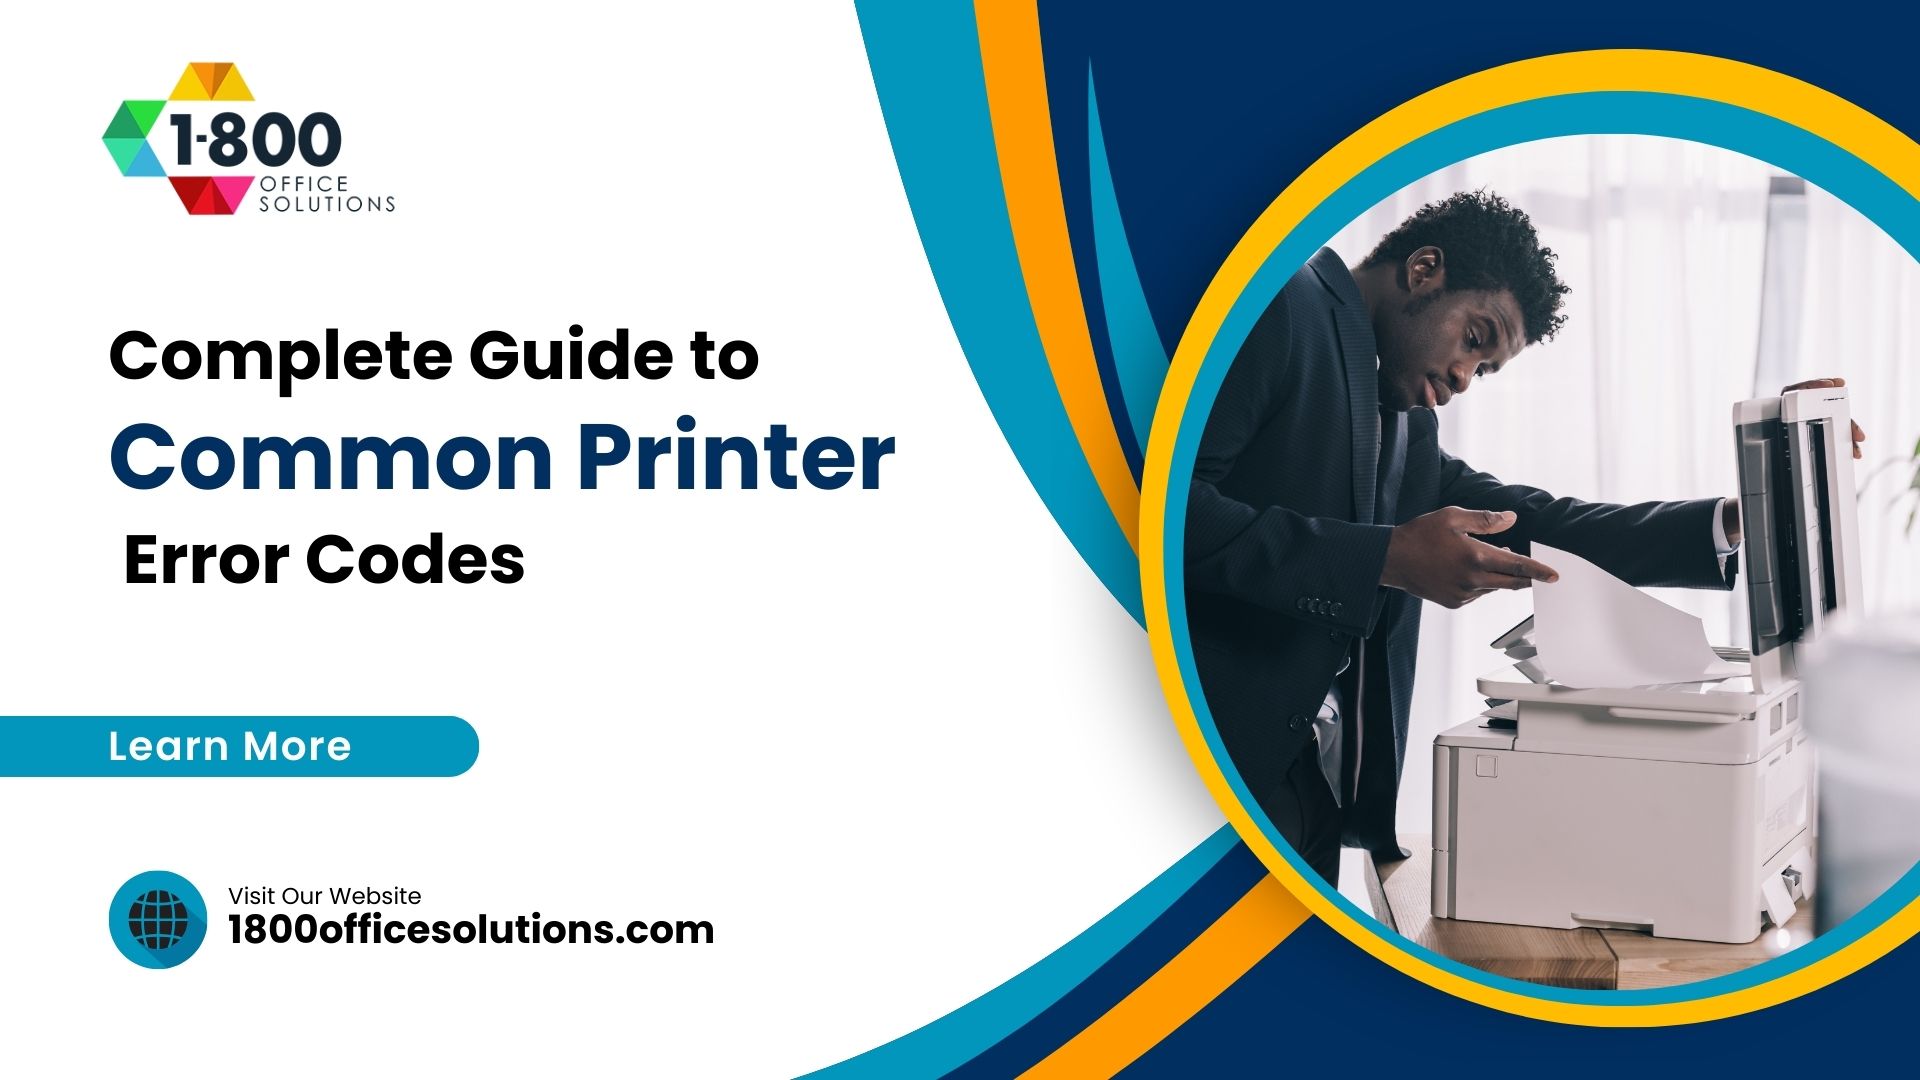 Complete Guide to Common Printer Error Codes